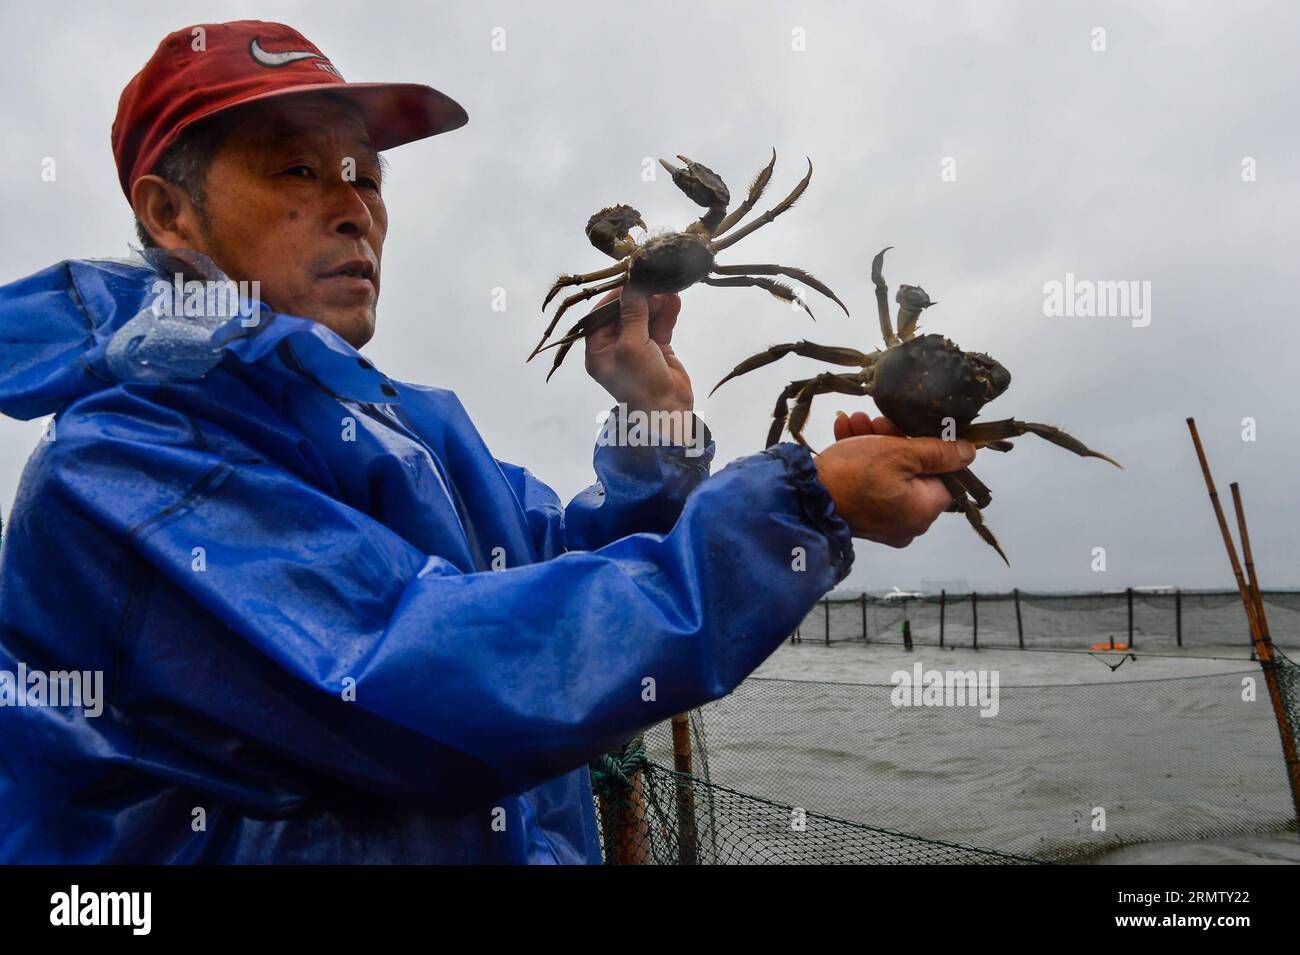 (140923) -- KUNSHAN, 23 septembre 2014 -- Un pêcheur montre des crabes chinois récoltés sur le lac Yangcheng dans la ville de Bacheng à Kunshan, province du Jiangsu, dans l'est de la Chine, le 23 septembre 2014. La saison de récolte 2014 pour le crabe moufle chinois (Eriocheir sinensis) dans le lac Yangcheng, une importante zone productrice, a débuté mardi. Aussi connu comme le grand crabe d'écluse, les crabes chinois à moufles sont favorisés par de nombreux amateurs de gourmets et se vendent bien en ligne et sur les marchés réels ) (wjq) CHINE-JIANGSU-FISHERY-YANGCHENG LAKE-PÊCHE CHINOISE AU CRABE À MOUFLES (CN) LixXiang PUBLICATIONxNOTxINxCHN Kunshan sept 23 2014 a FIS Banque D'Images